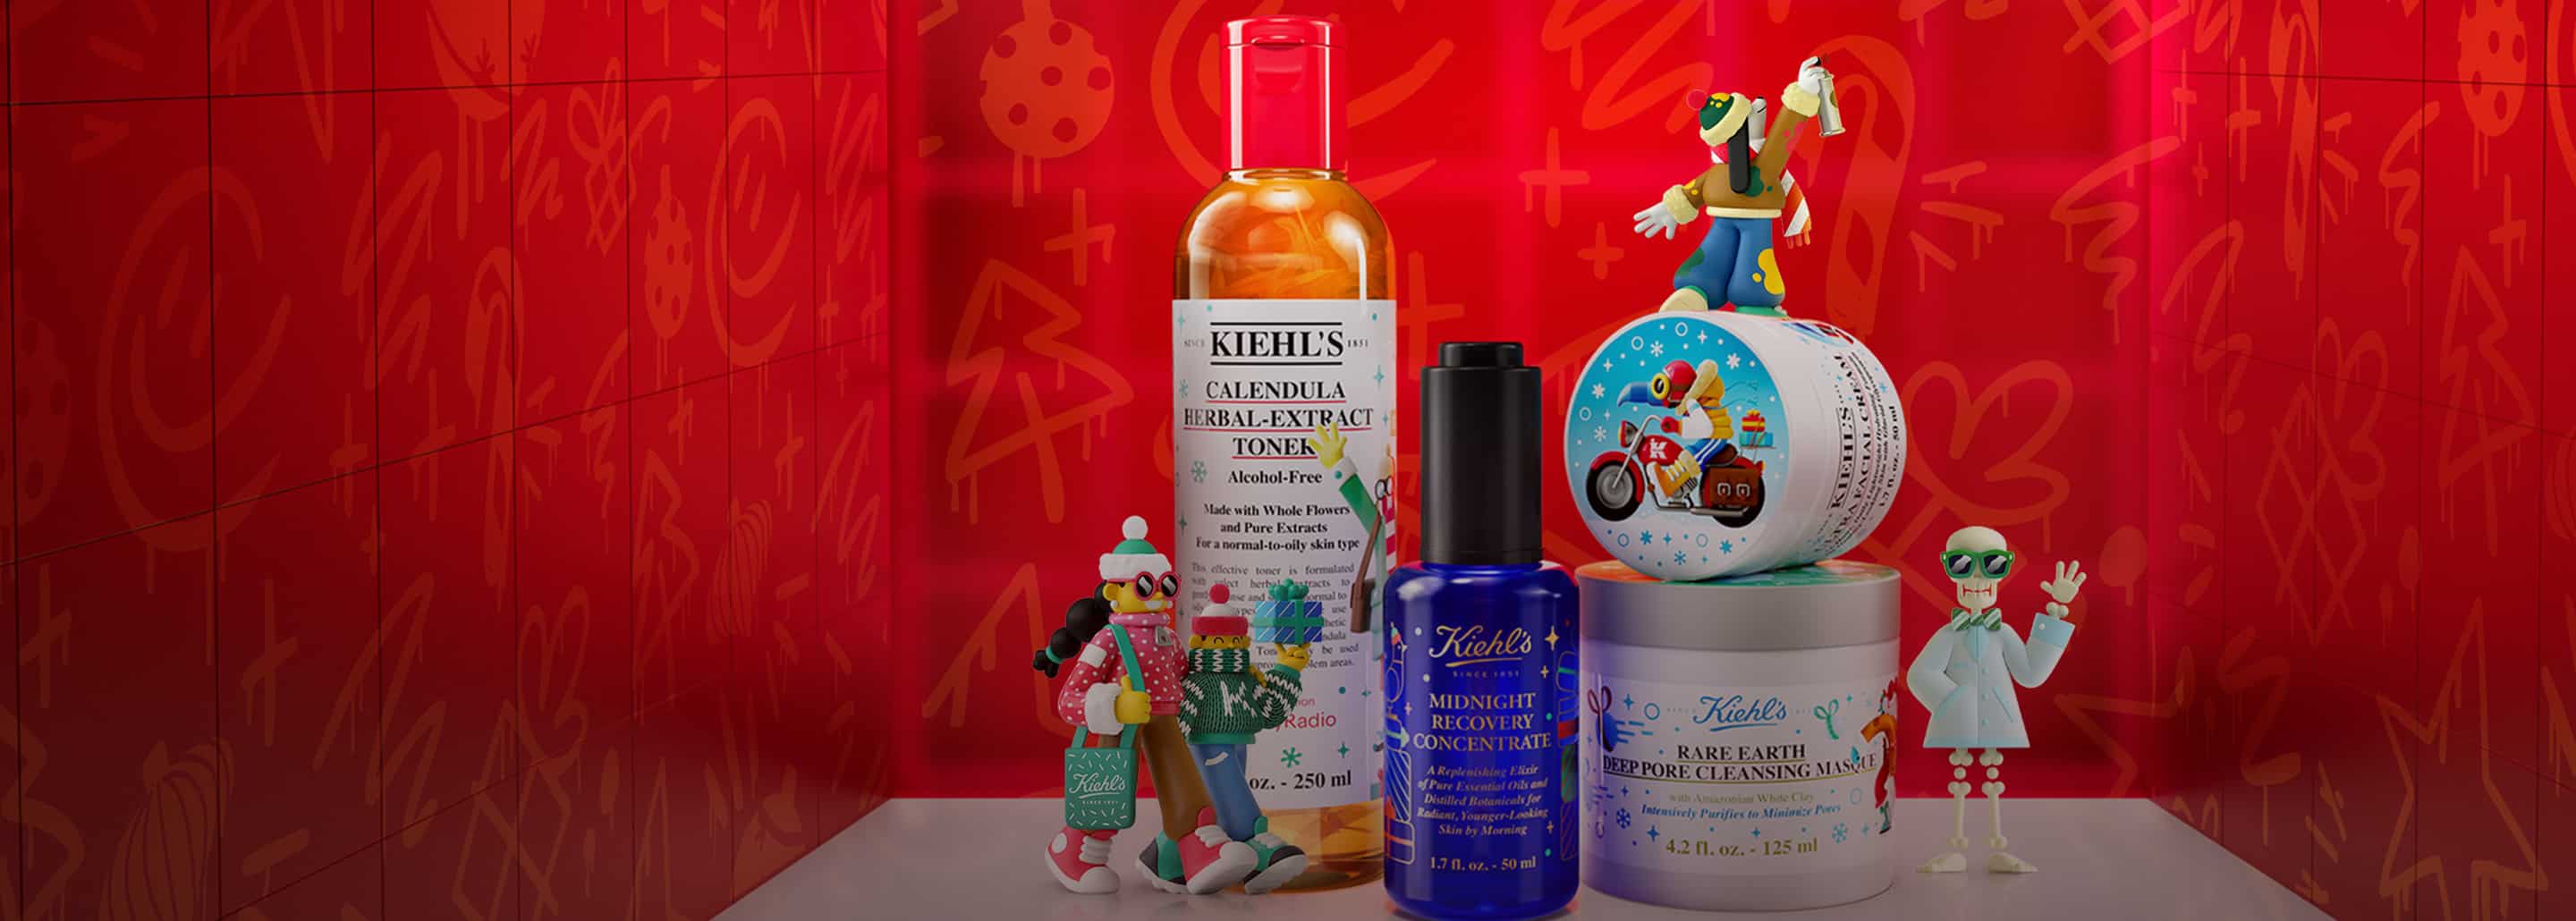 Imagen de cuatro productos de a marca KIEHLS, en un entorno navideño con adornos y fugurillas. KIEHL'S